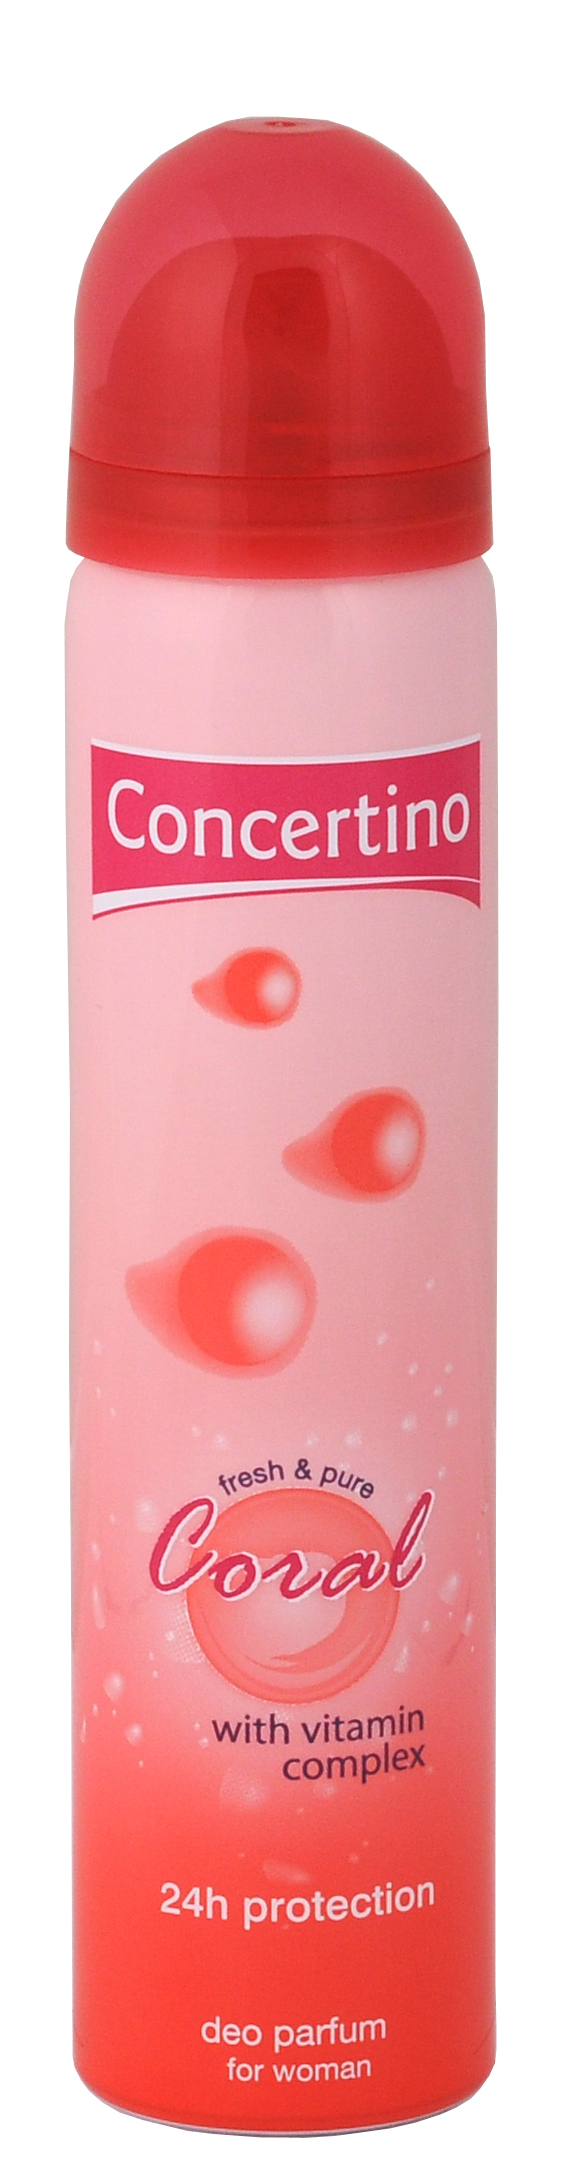 Concertino Coral Sea, dezodorant, spray 75ml